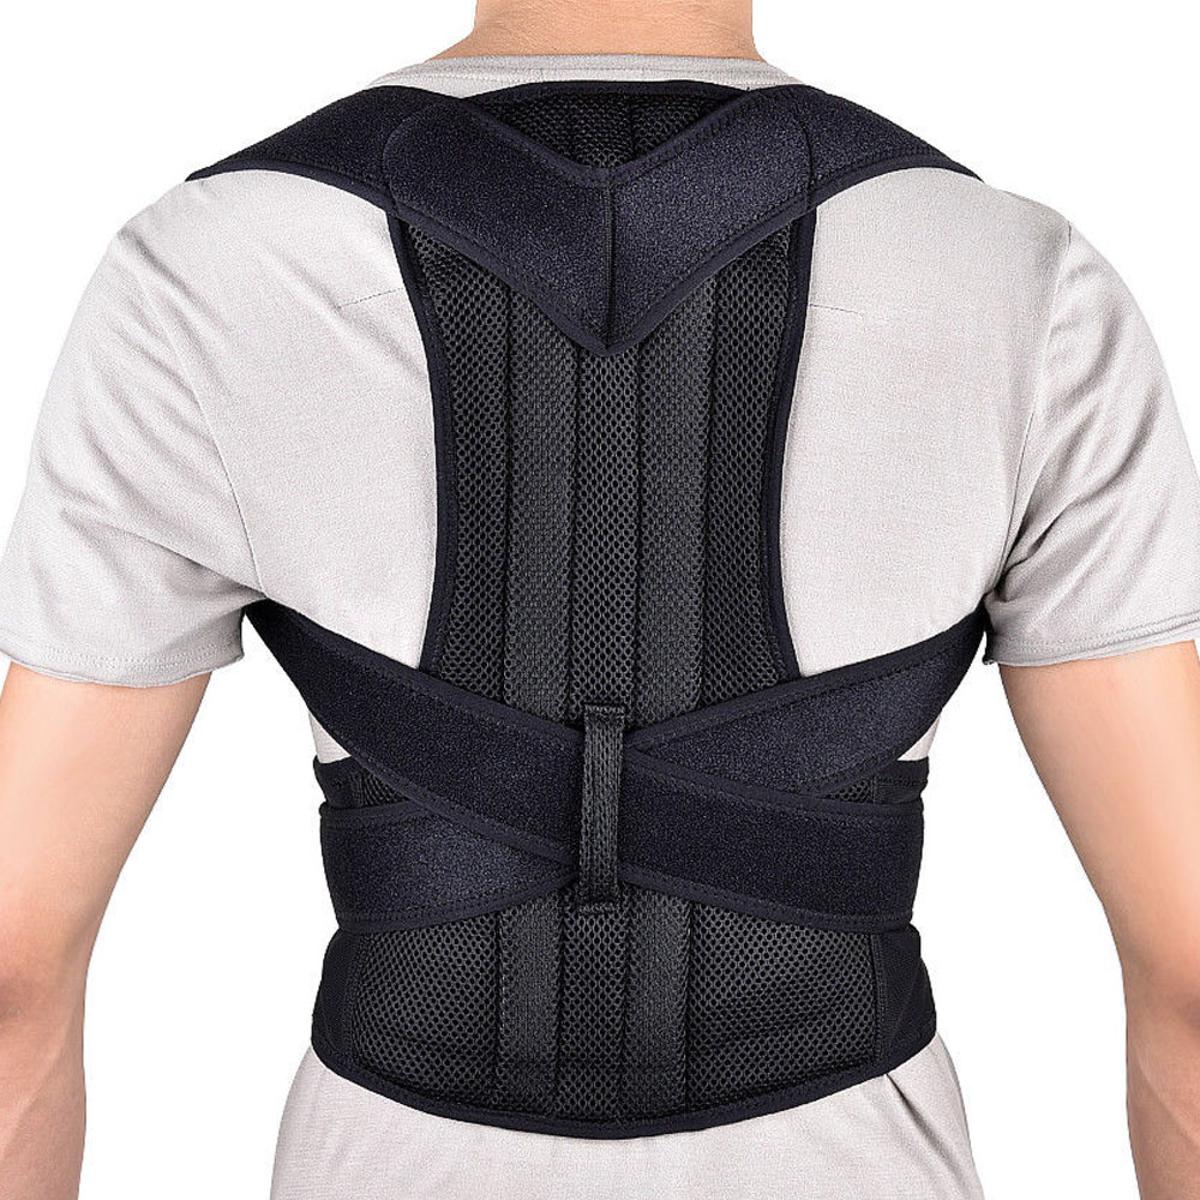 Posture belt, posture corrector belt, Back support belt, Back Pain Relief  Shoulder Back Support Belt-Back Pain Relief,Posture Corrector for Women and